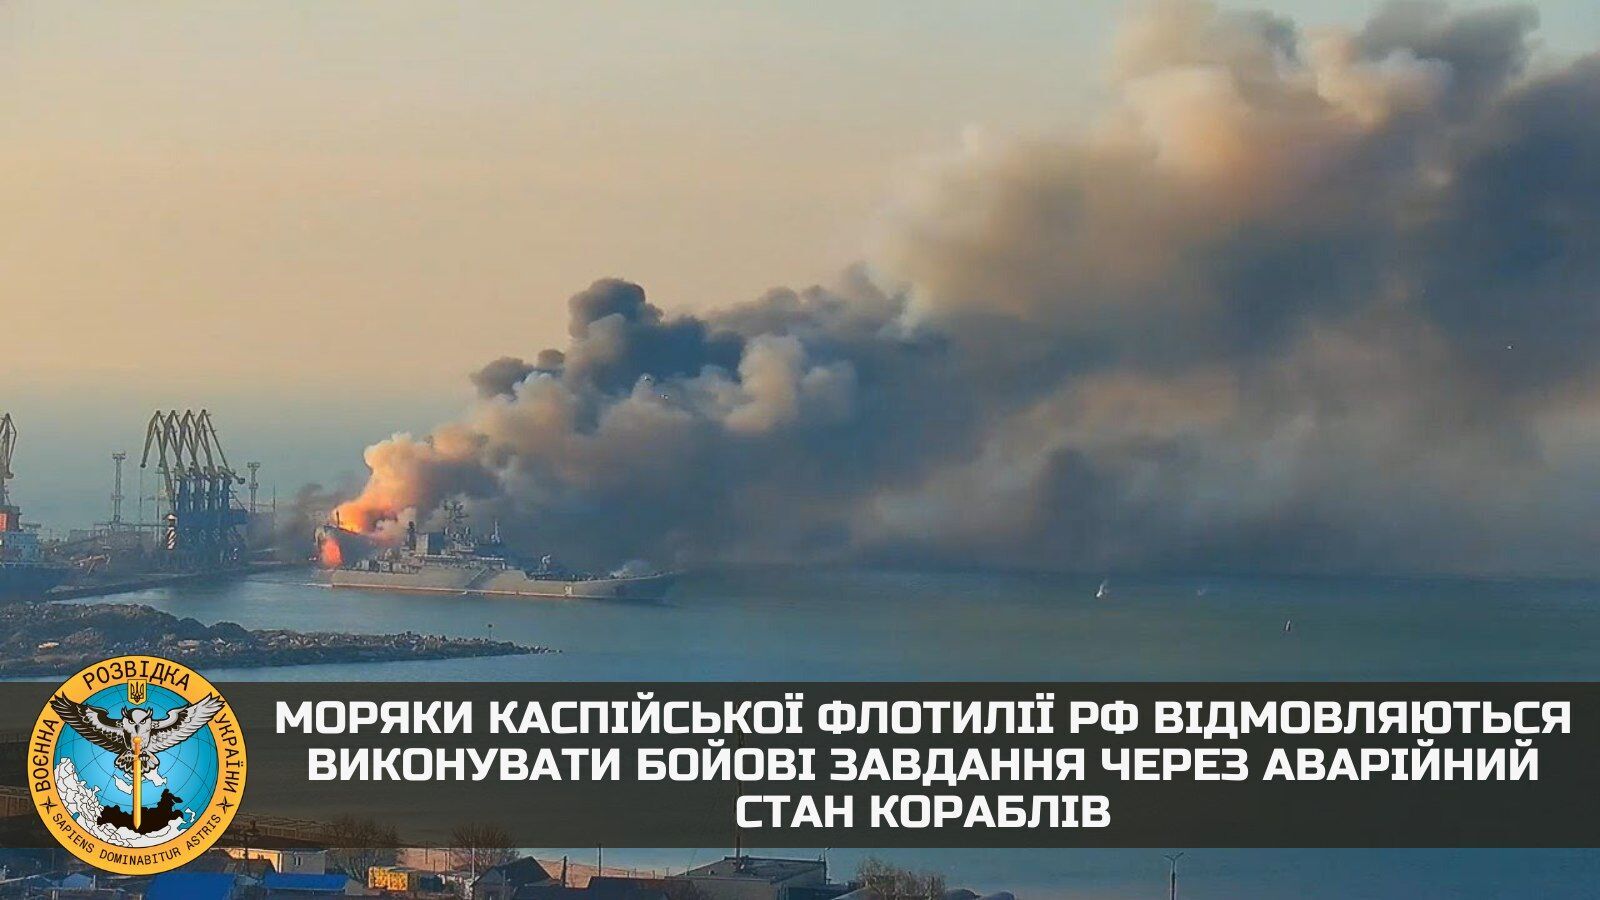 У российского флота возникли проблемы